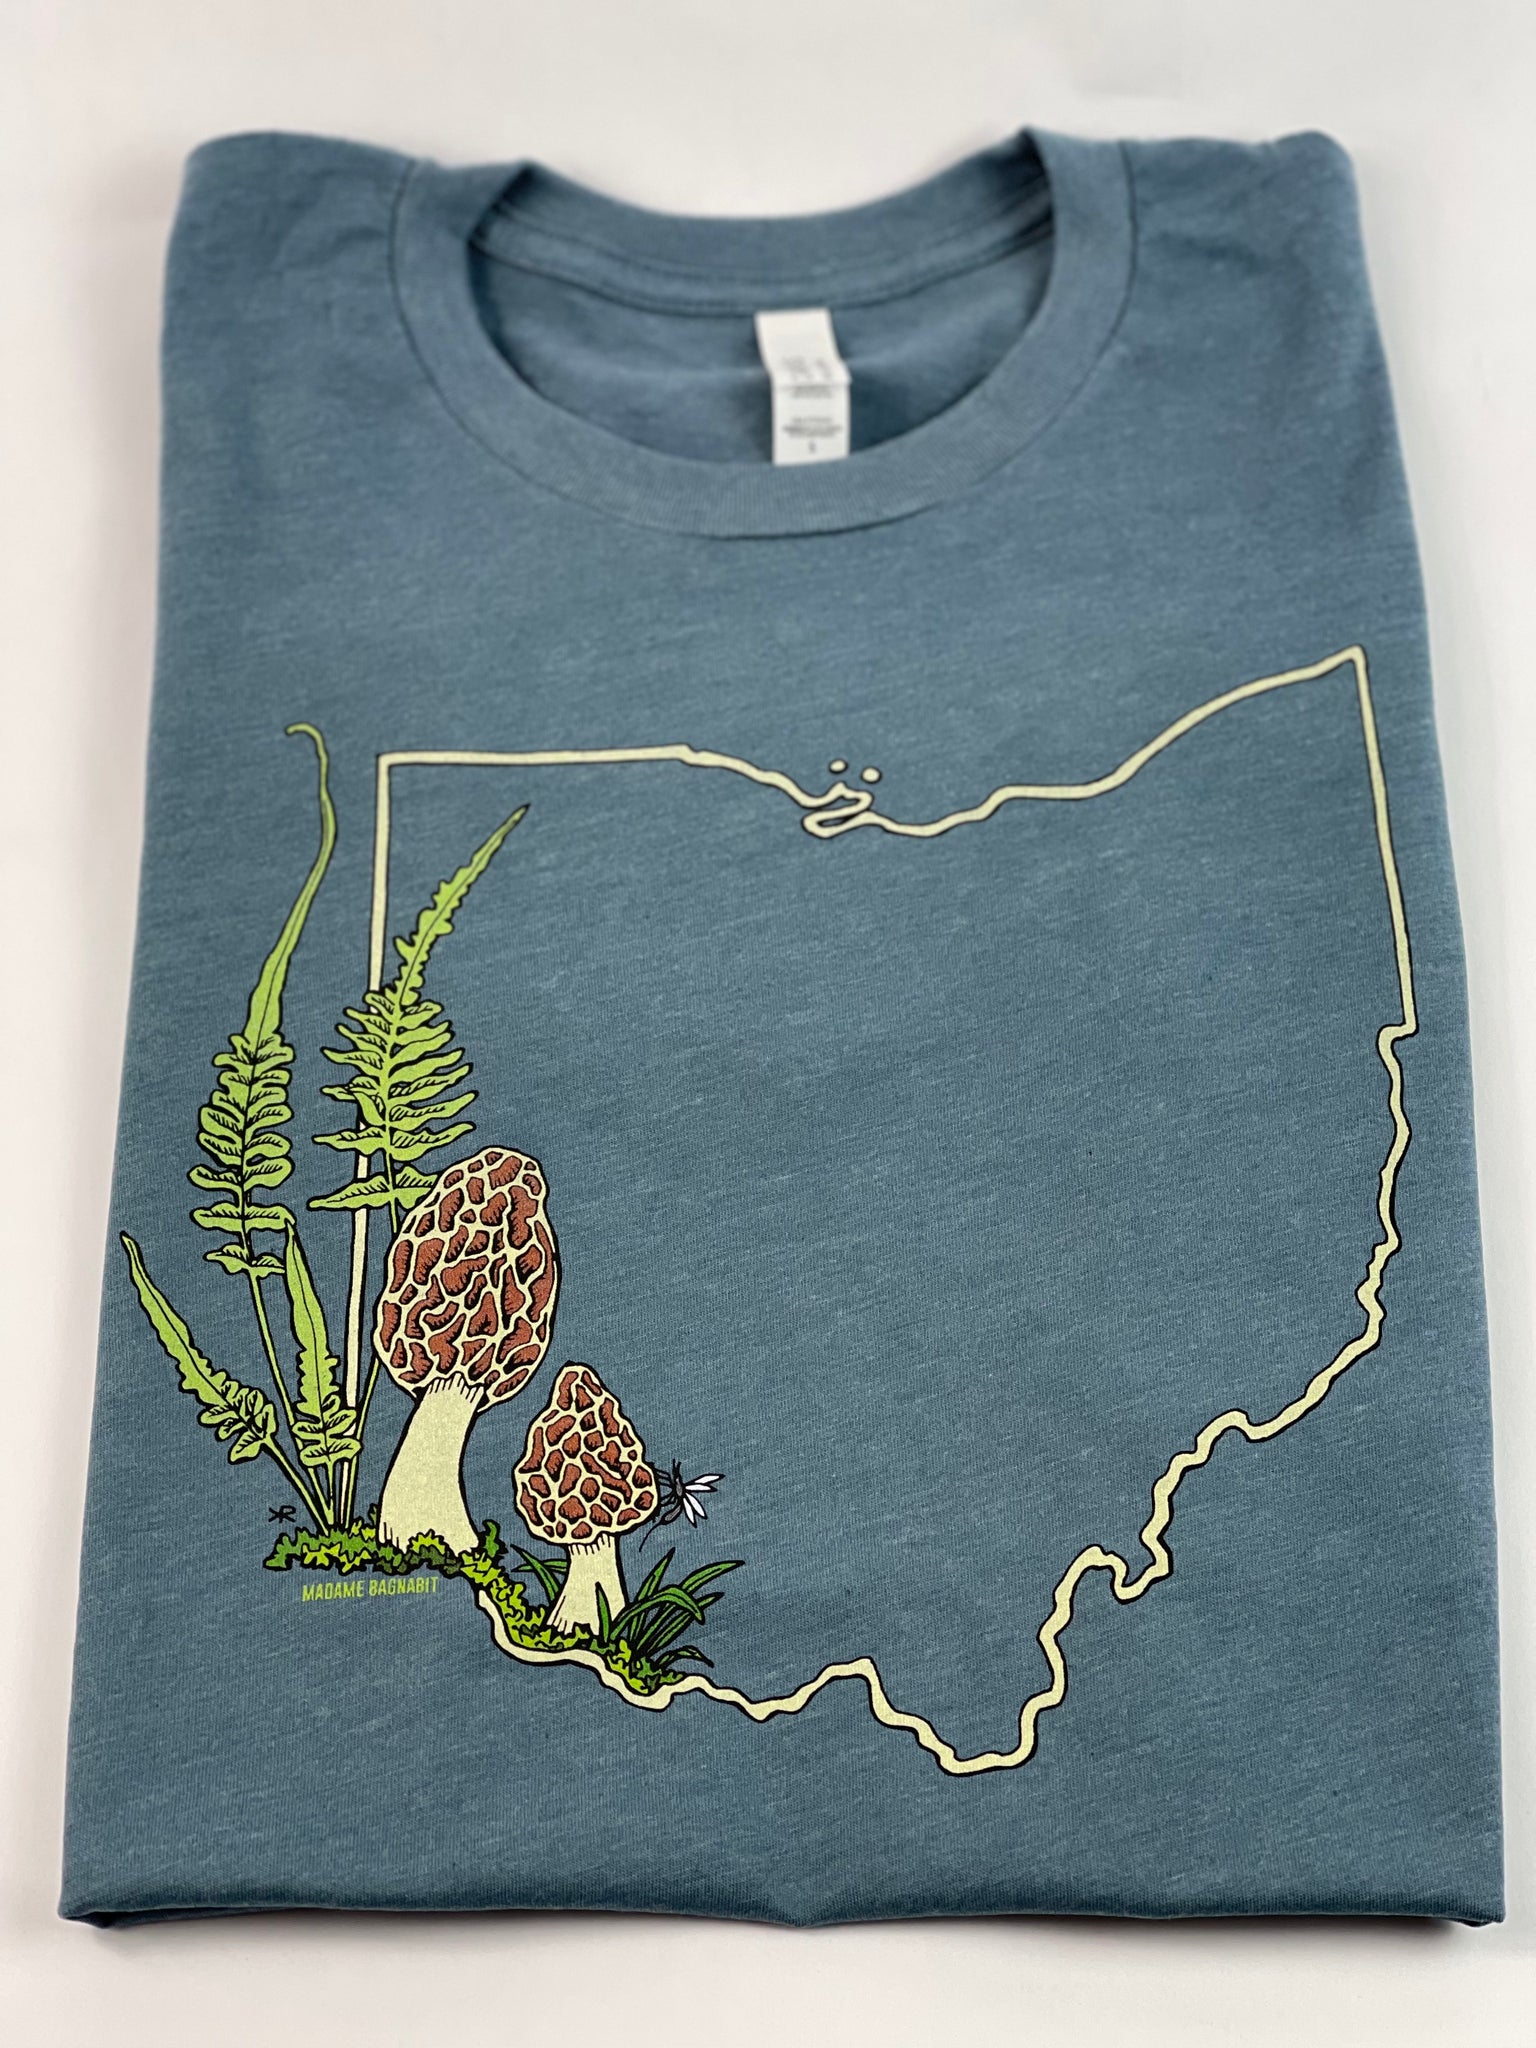 Ohio Morel Mushroom Spring unisex tshirt